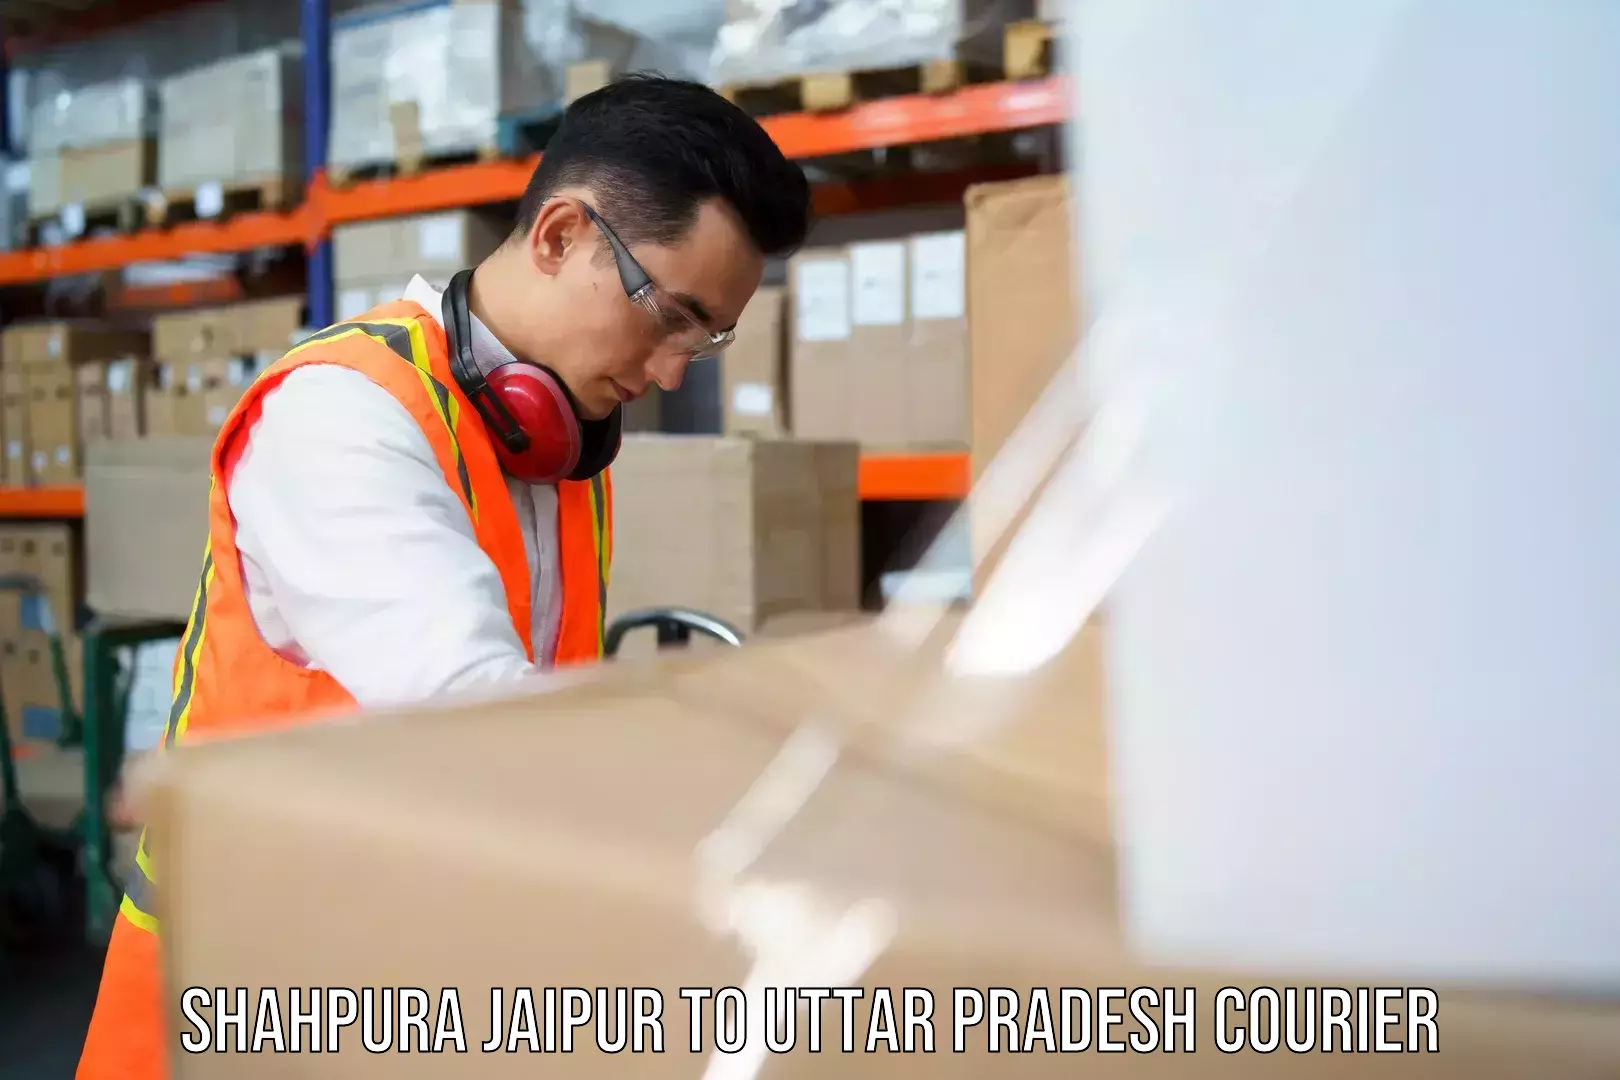 Express postal services Shahpura Jaipur to Uttar Pradesh